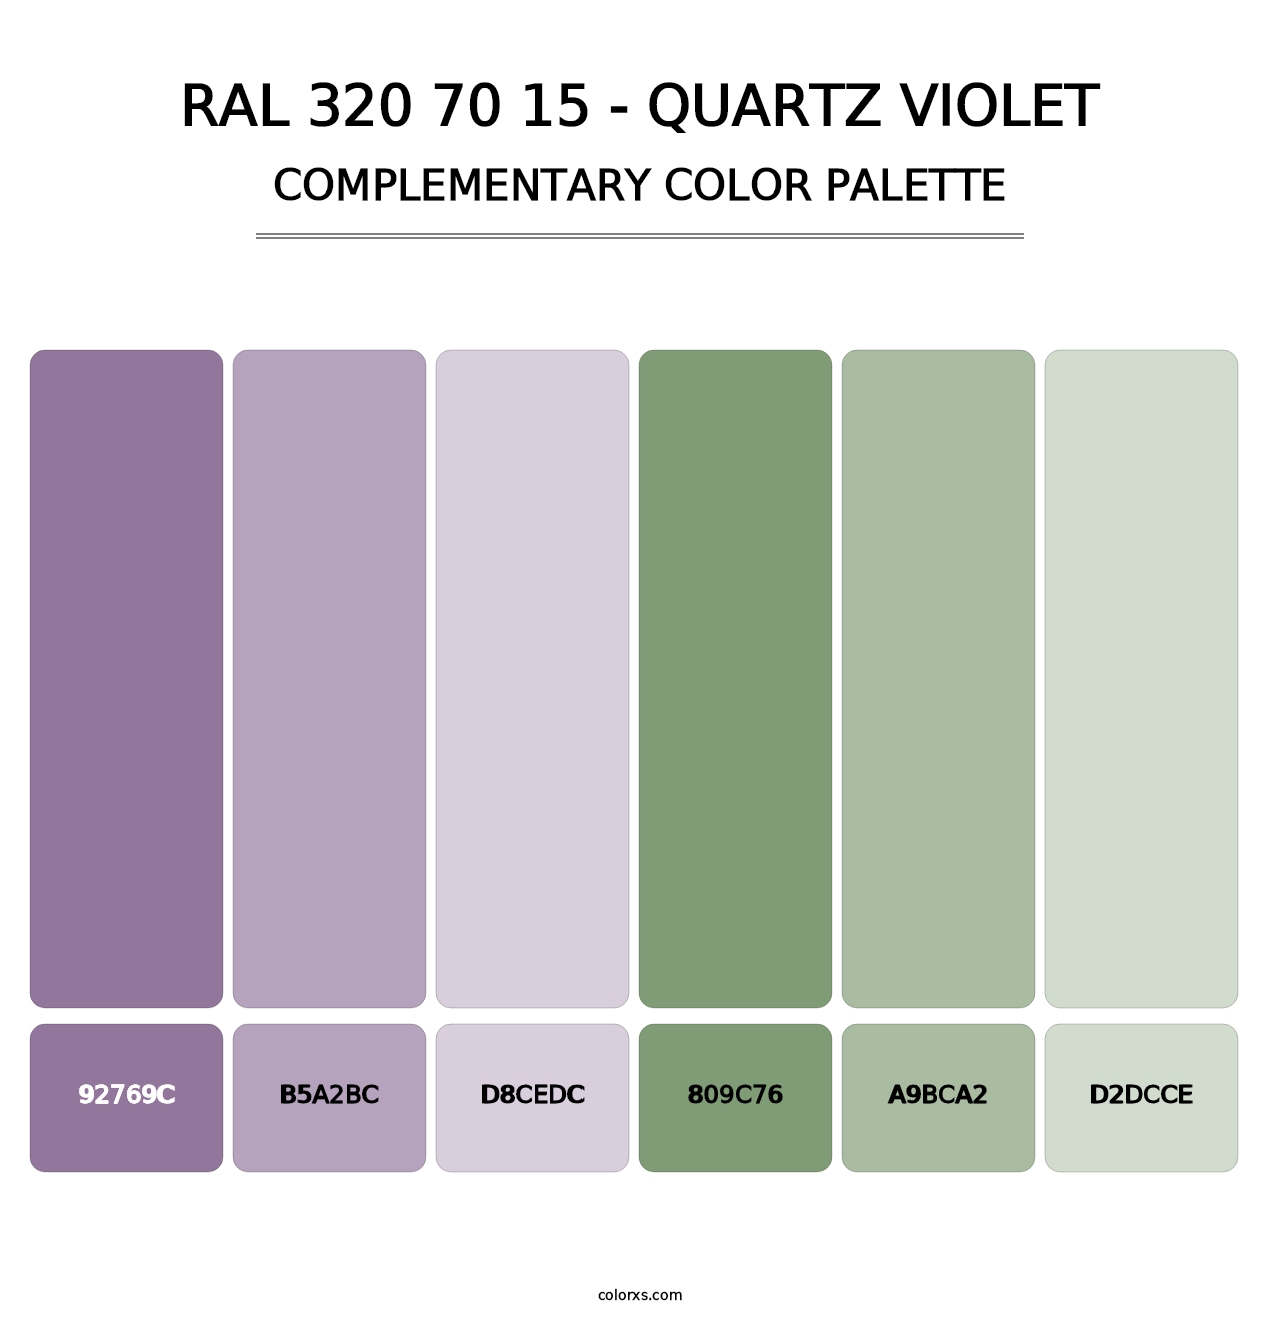 RAL 320 70 15 - Quartz Violet - Complementary Color Palette